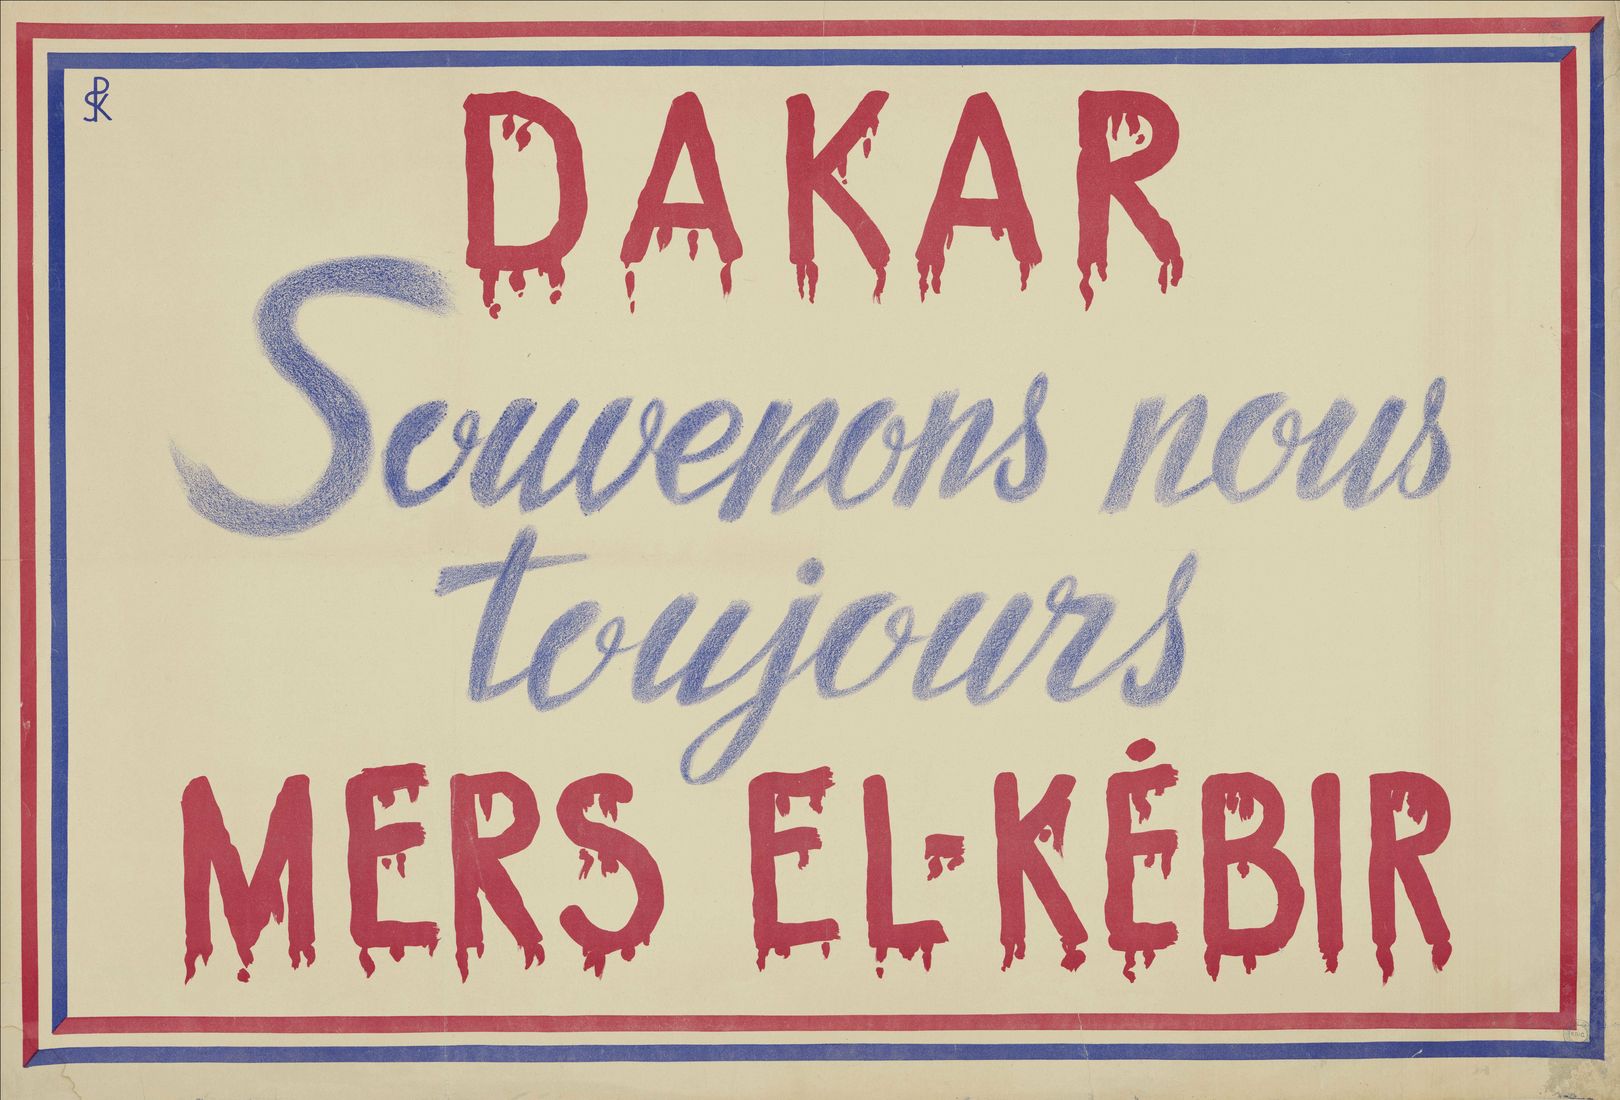 "Dakar, souvenons-nous toujours de Mers el-Kébir"